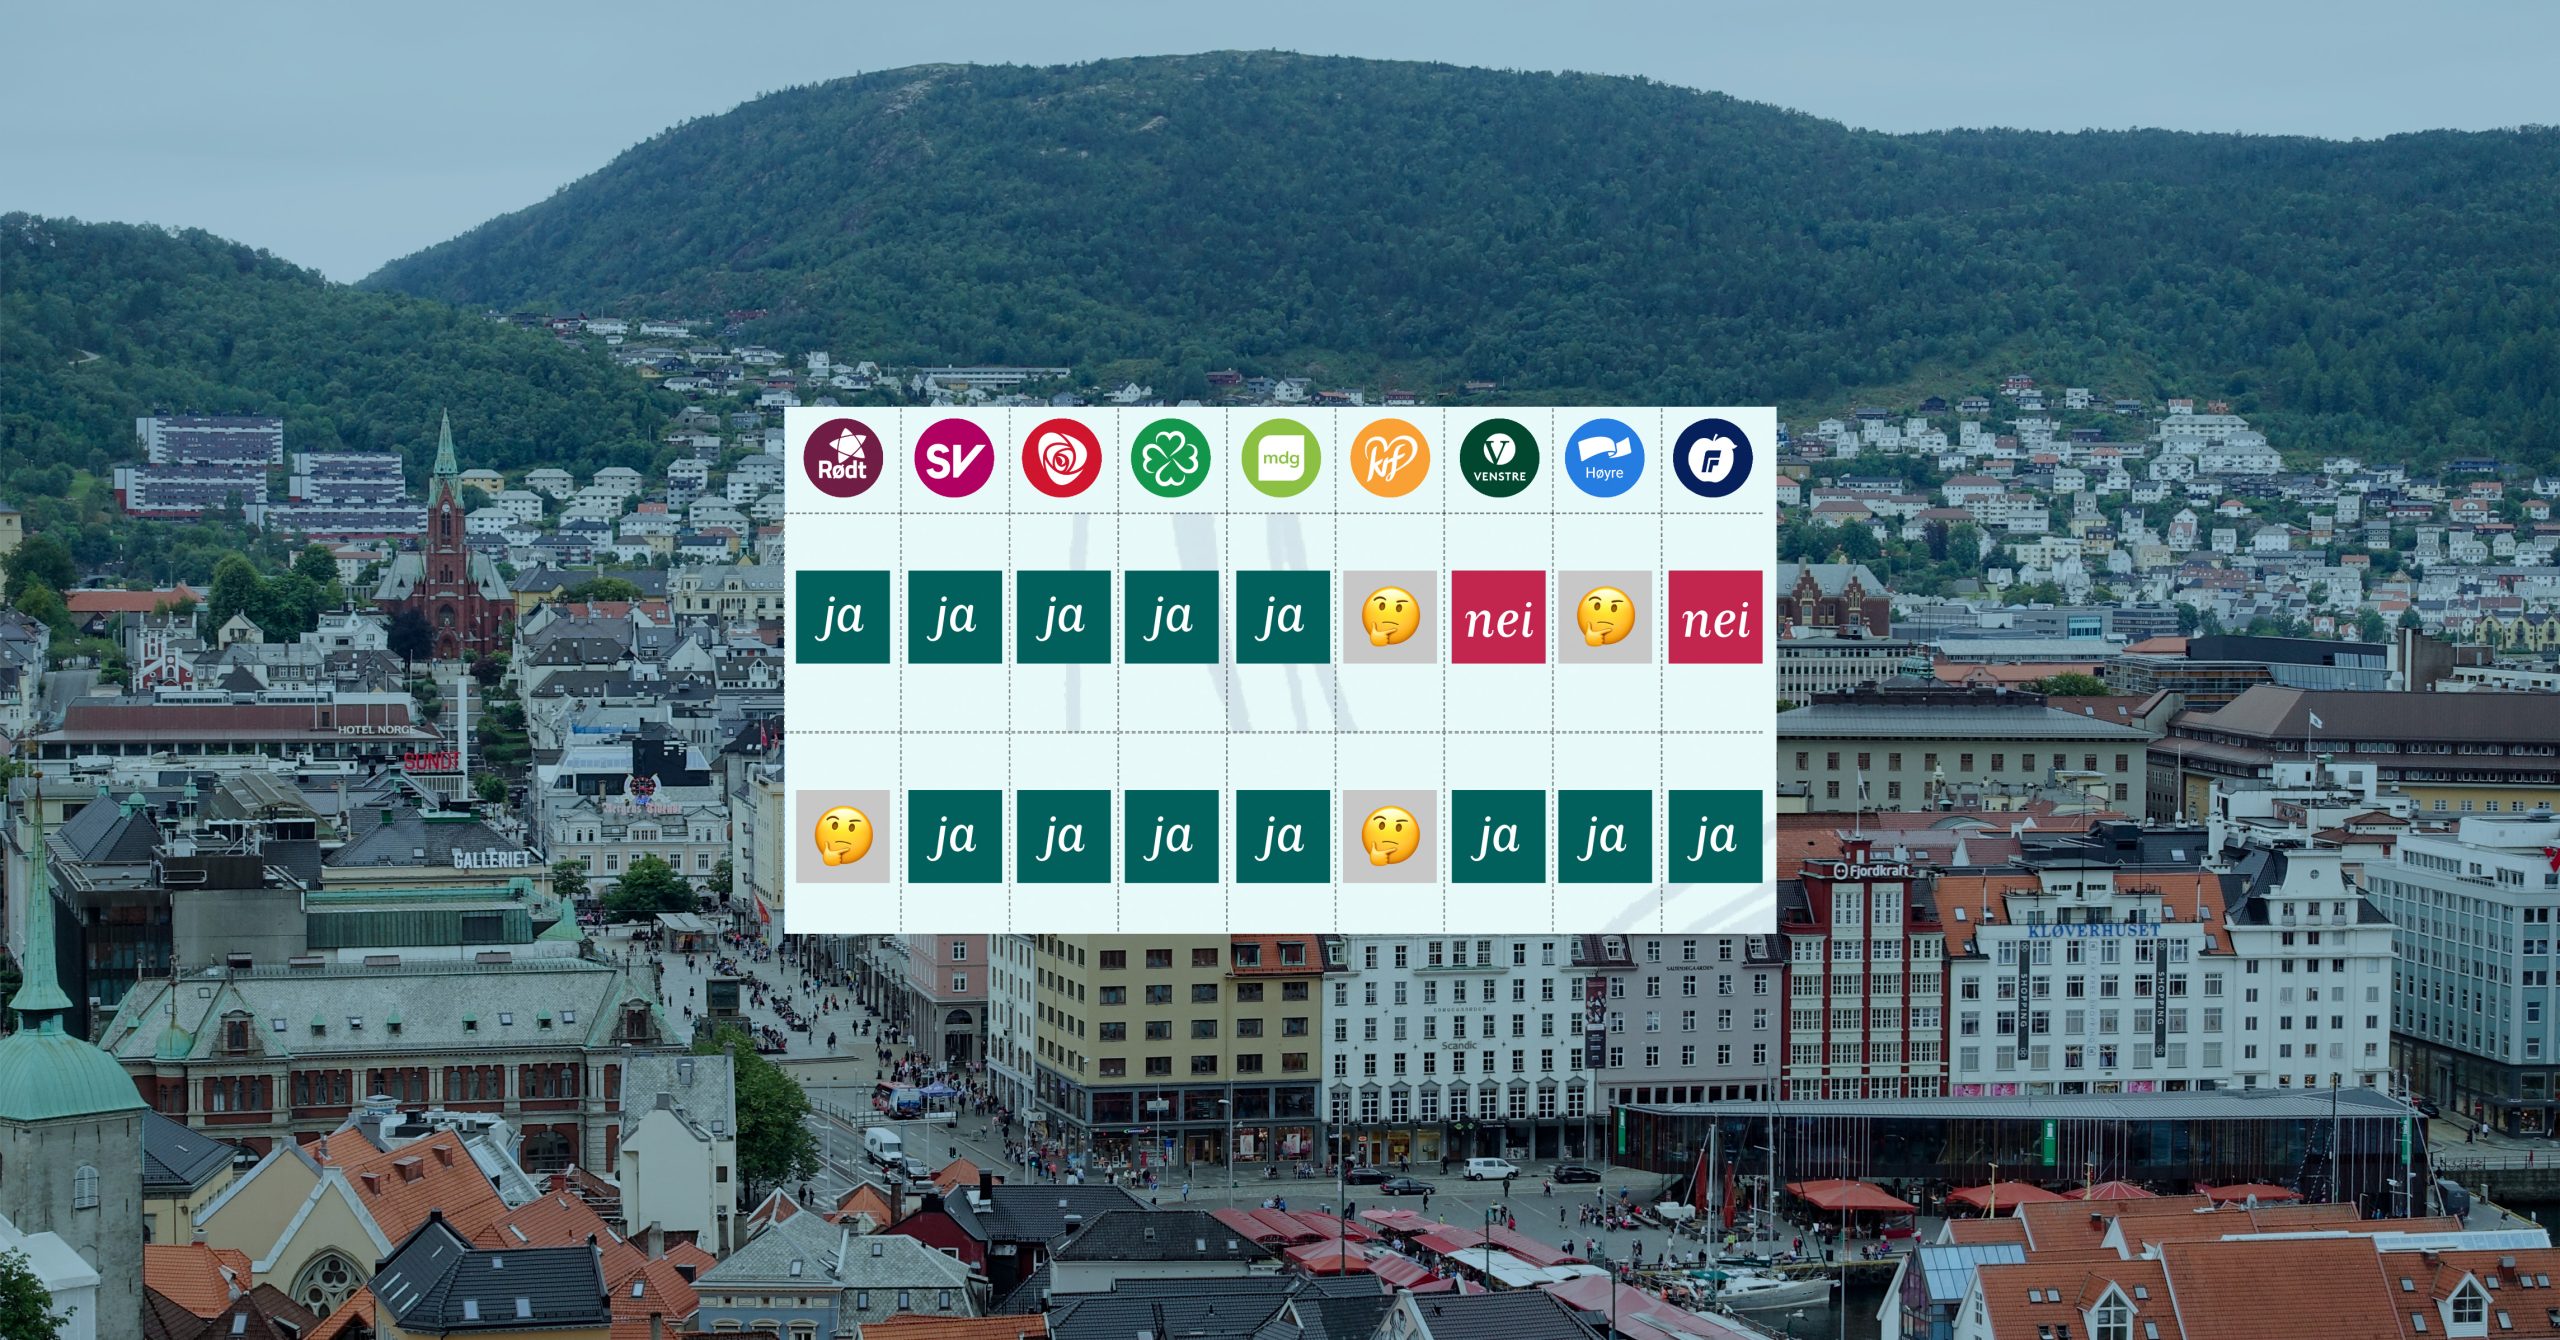 Bergen og utklipp av infografikk